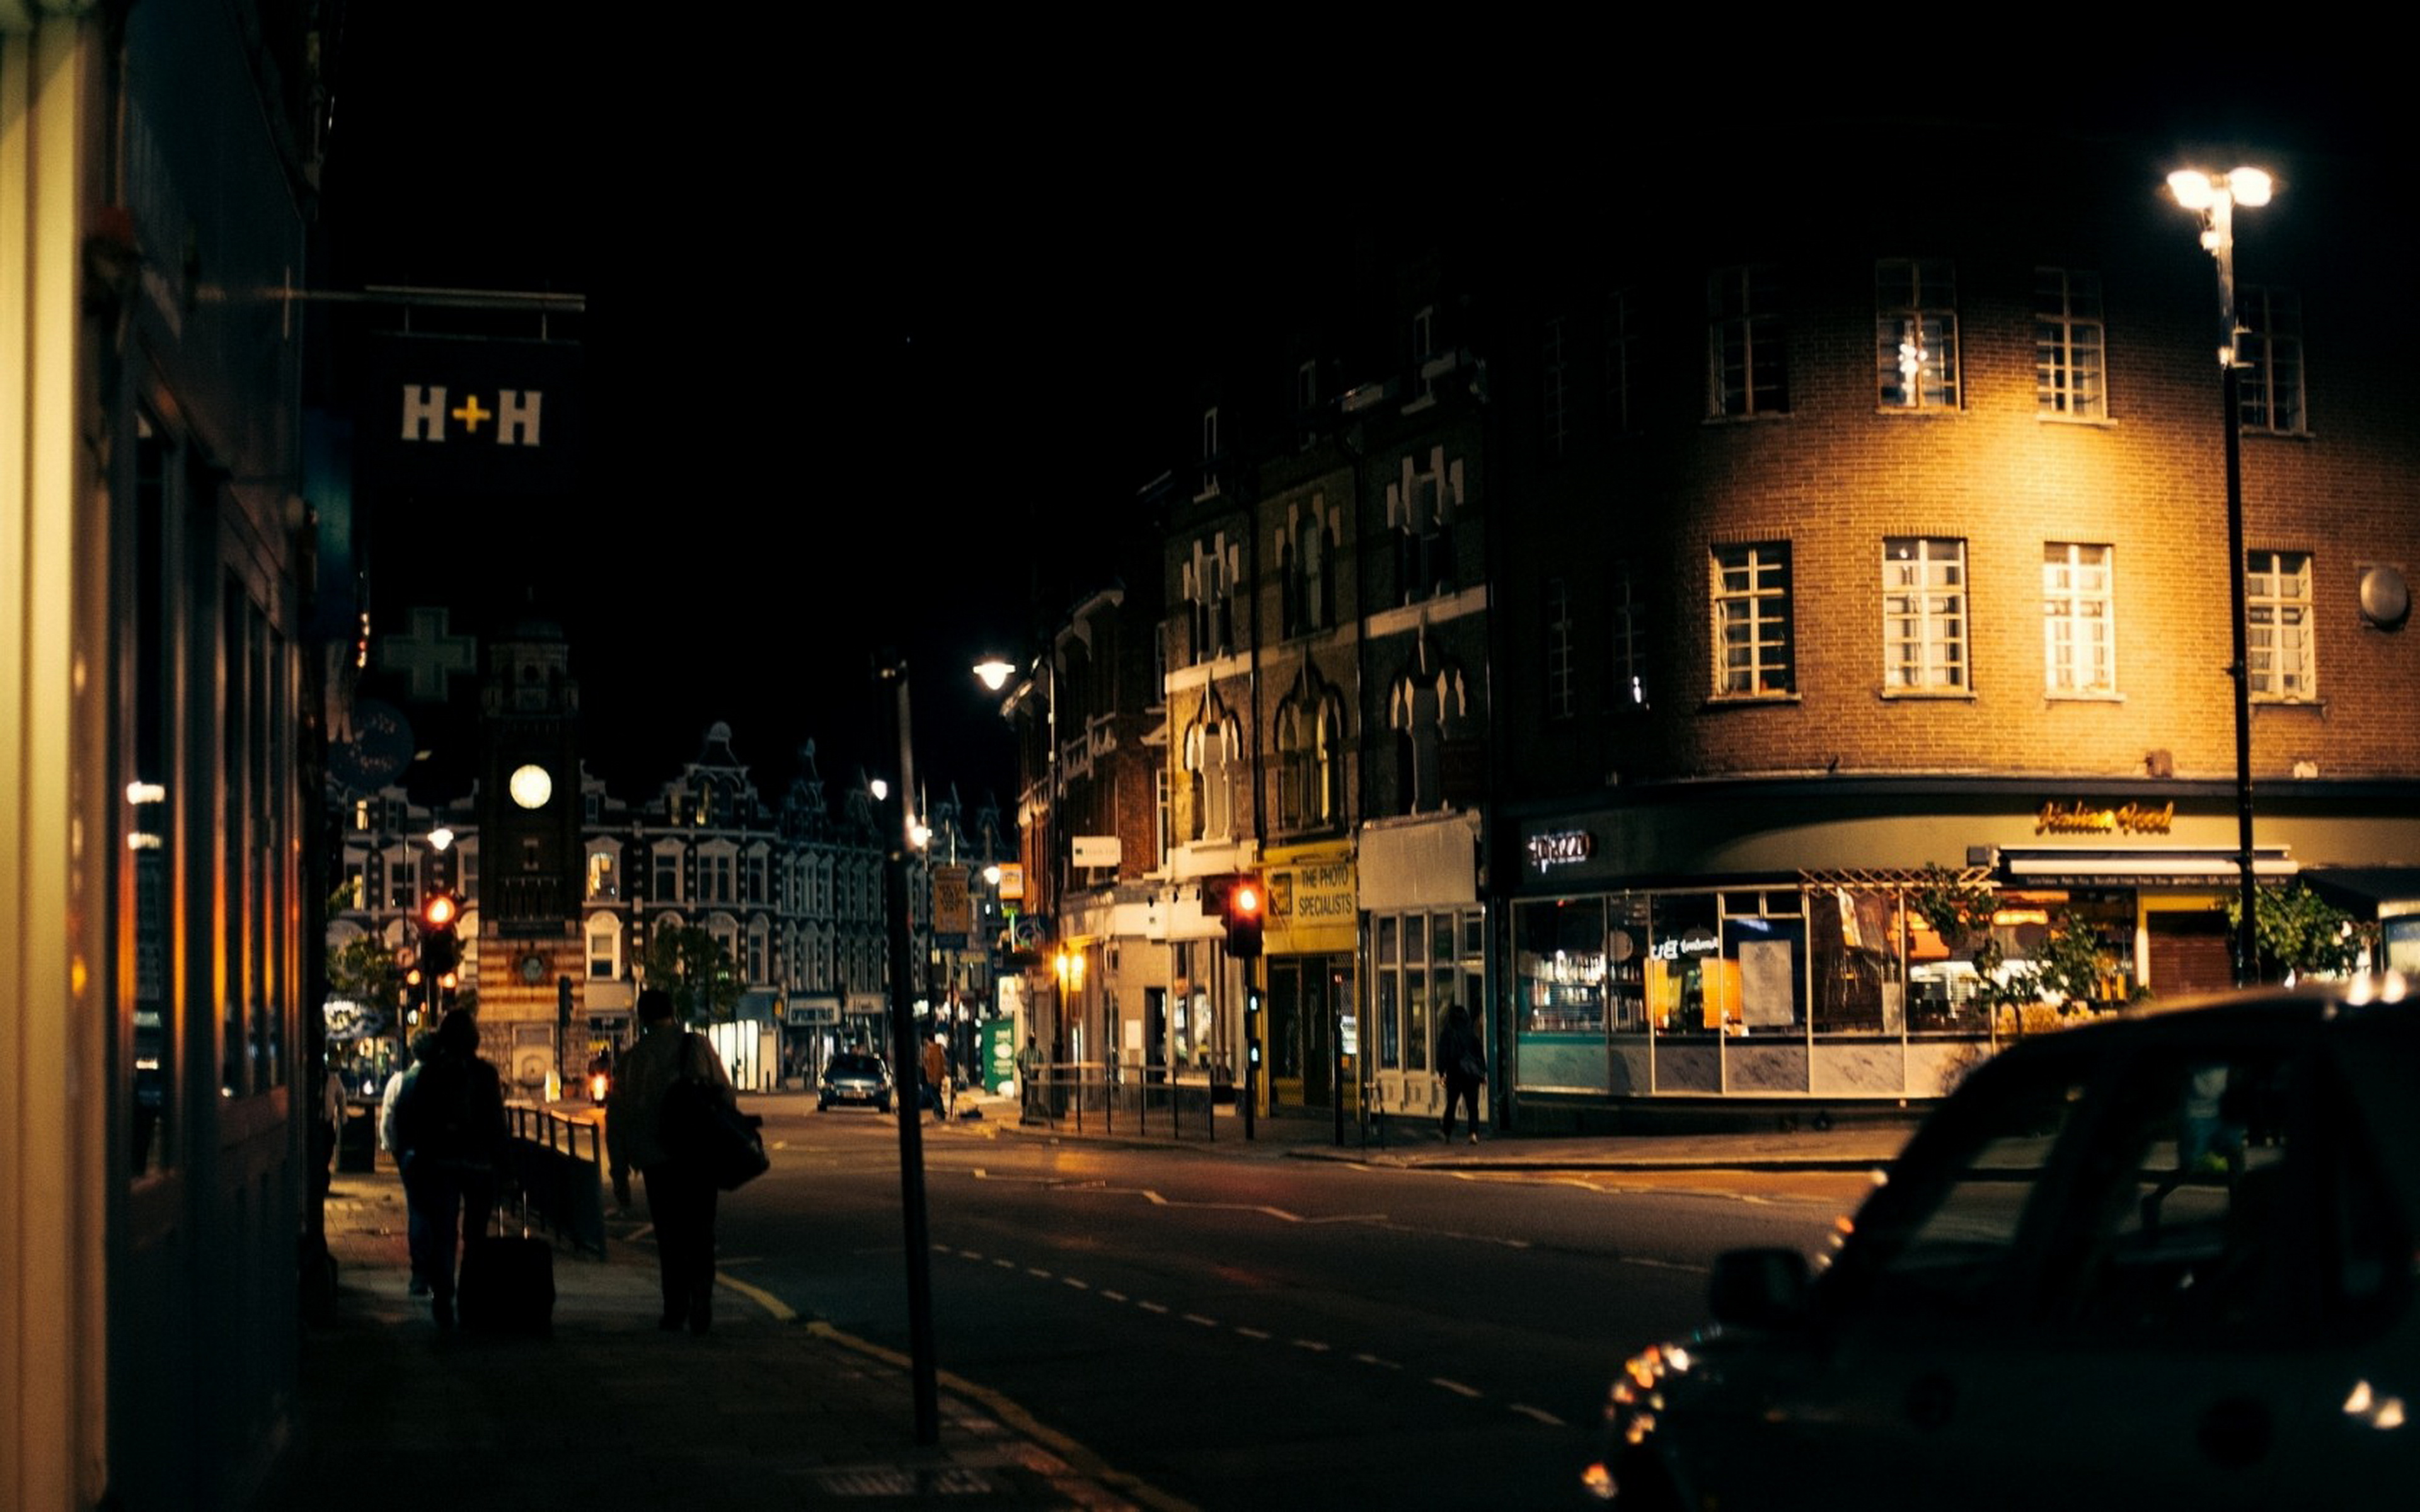 7 вечера на улице. Улицы Лондона ночью. Улицы Торки Англия. Портленд роуд Лондон. Англия пригород Лондона ночь.